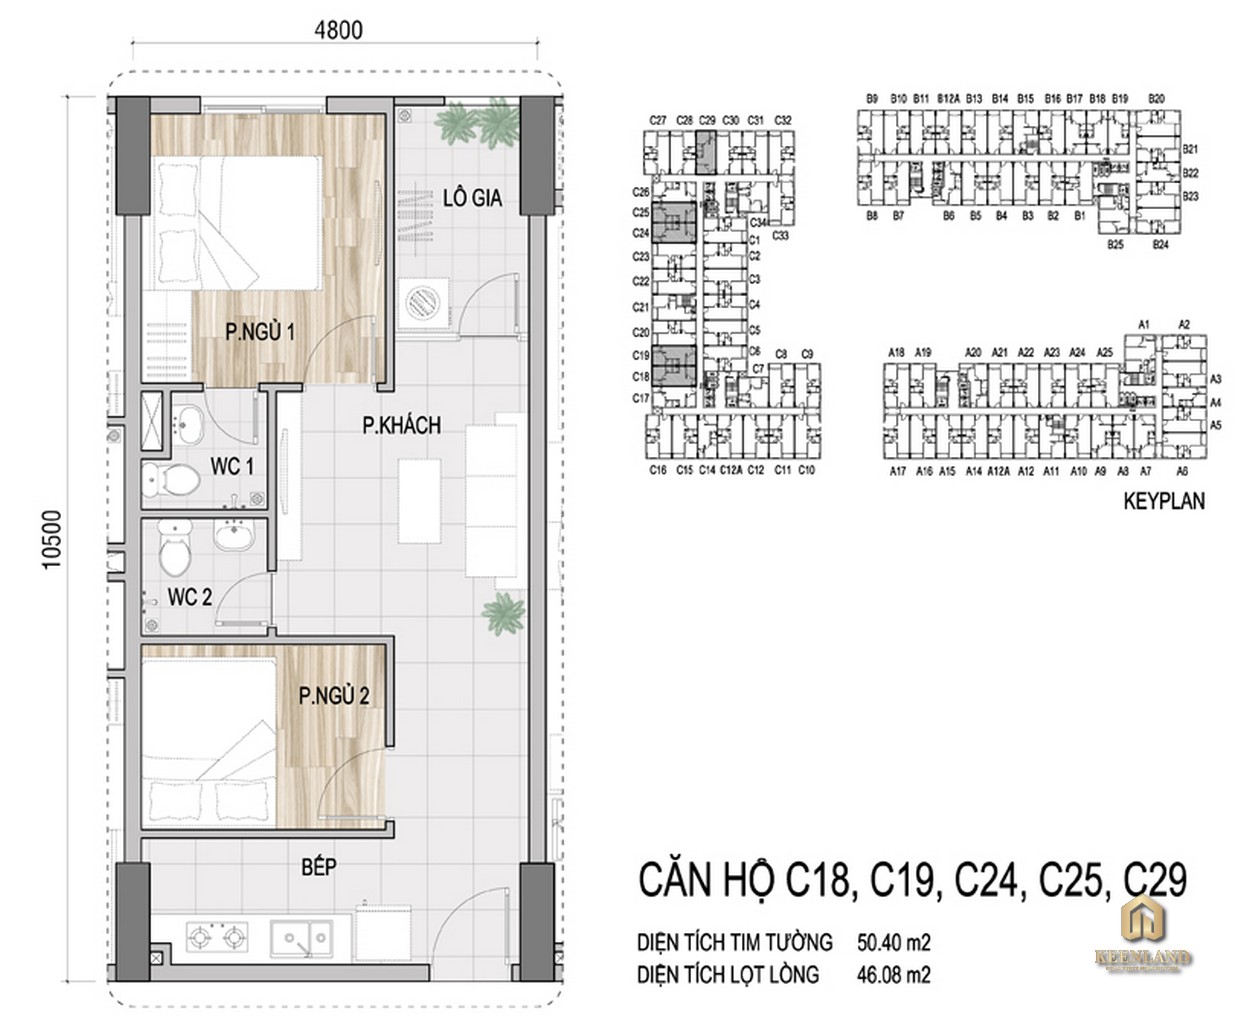 Thiết kế chi tiết căn hộ C18, C19, C24, C25, C29 Lakeview Tower